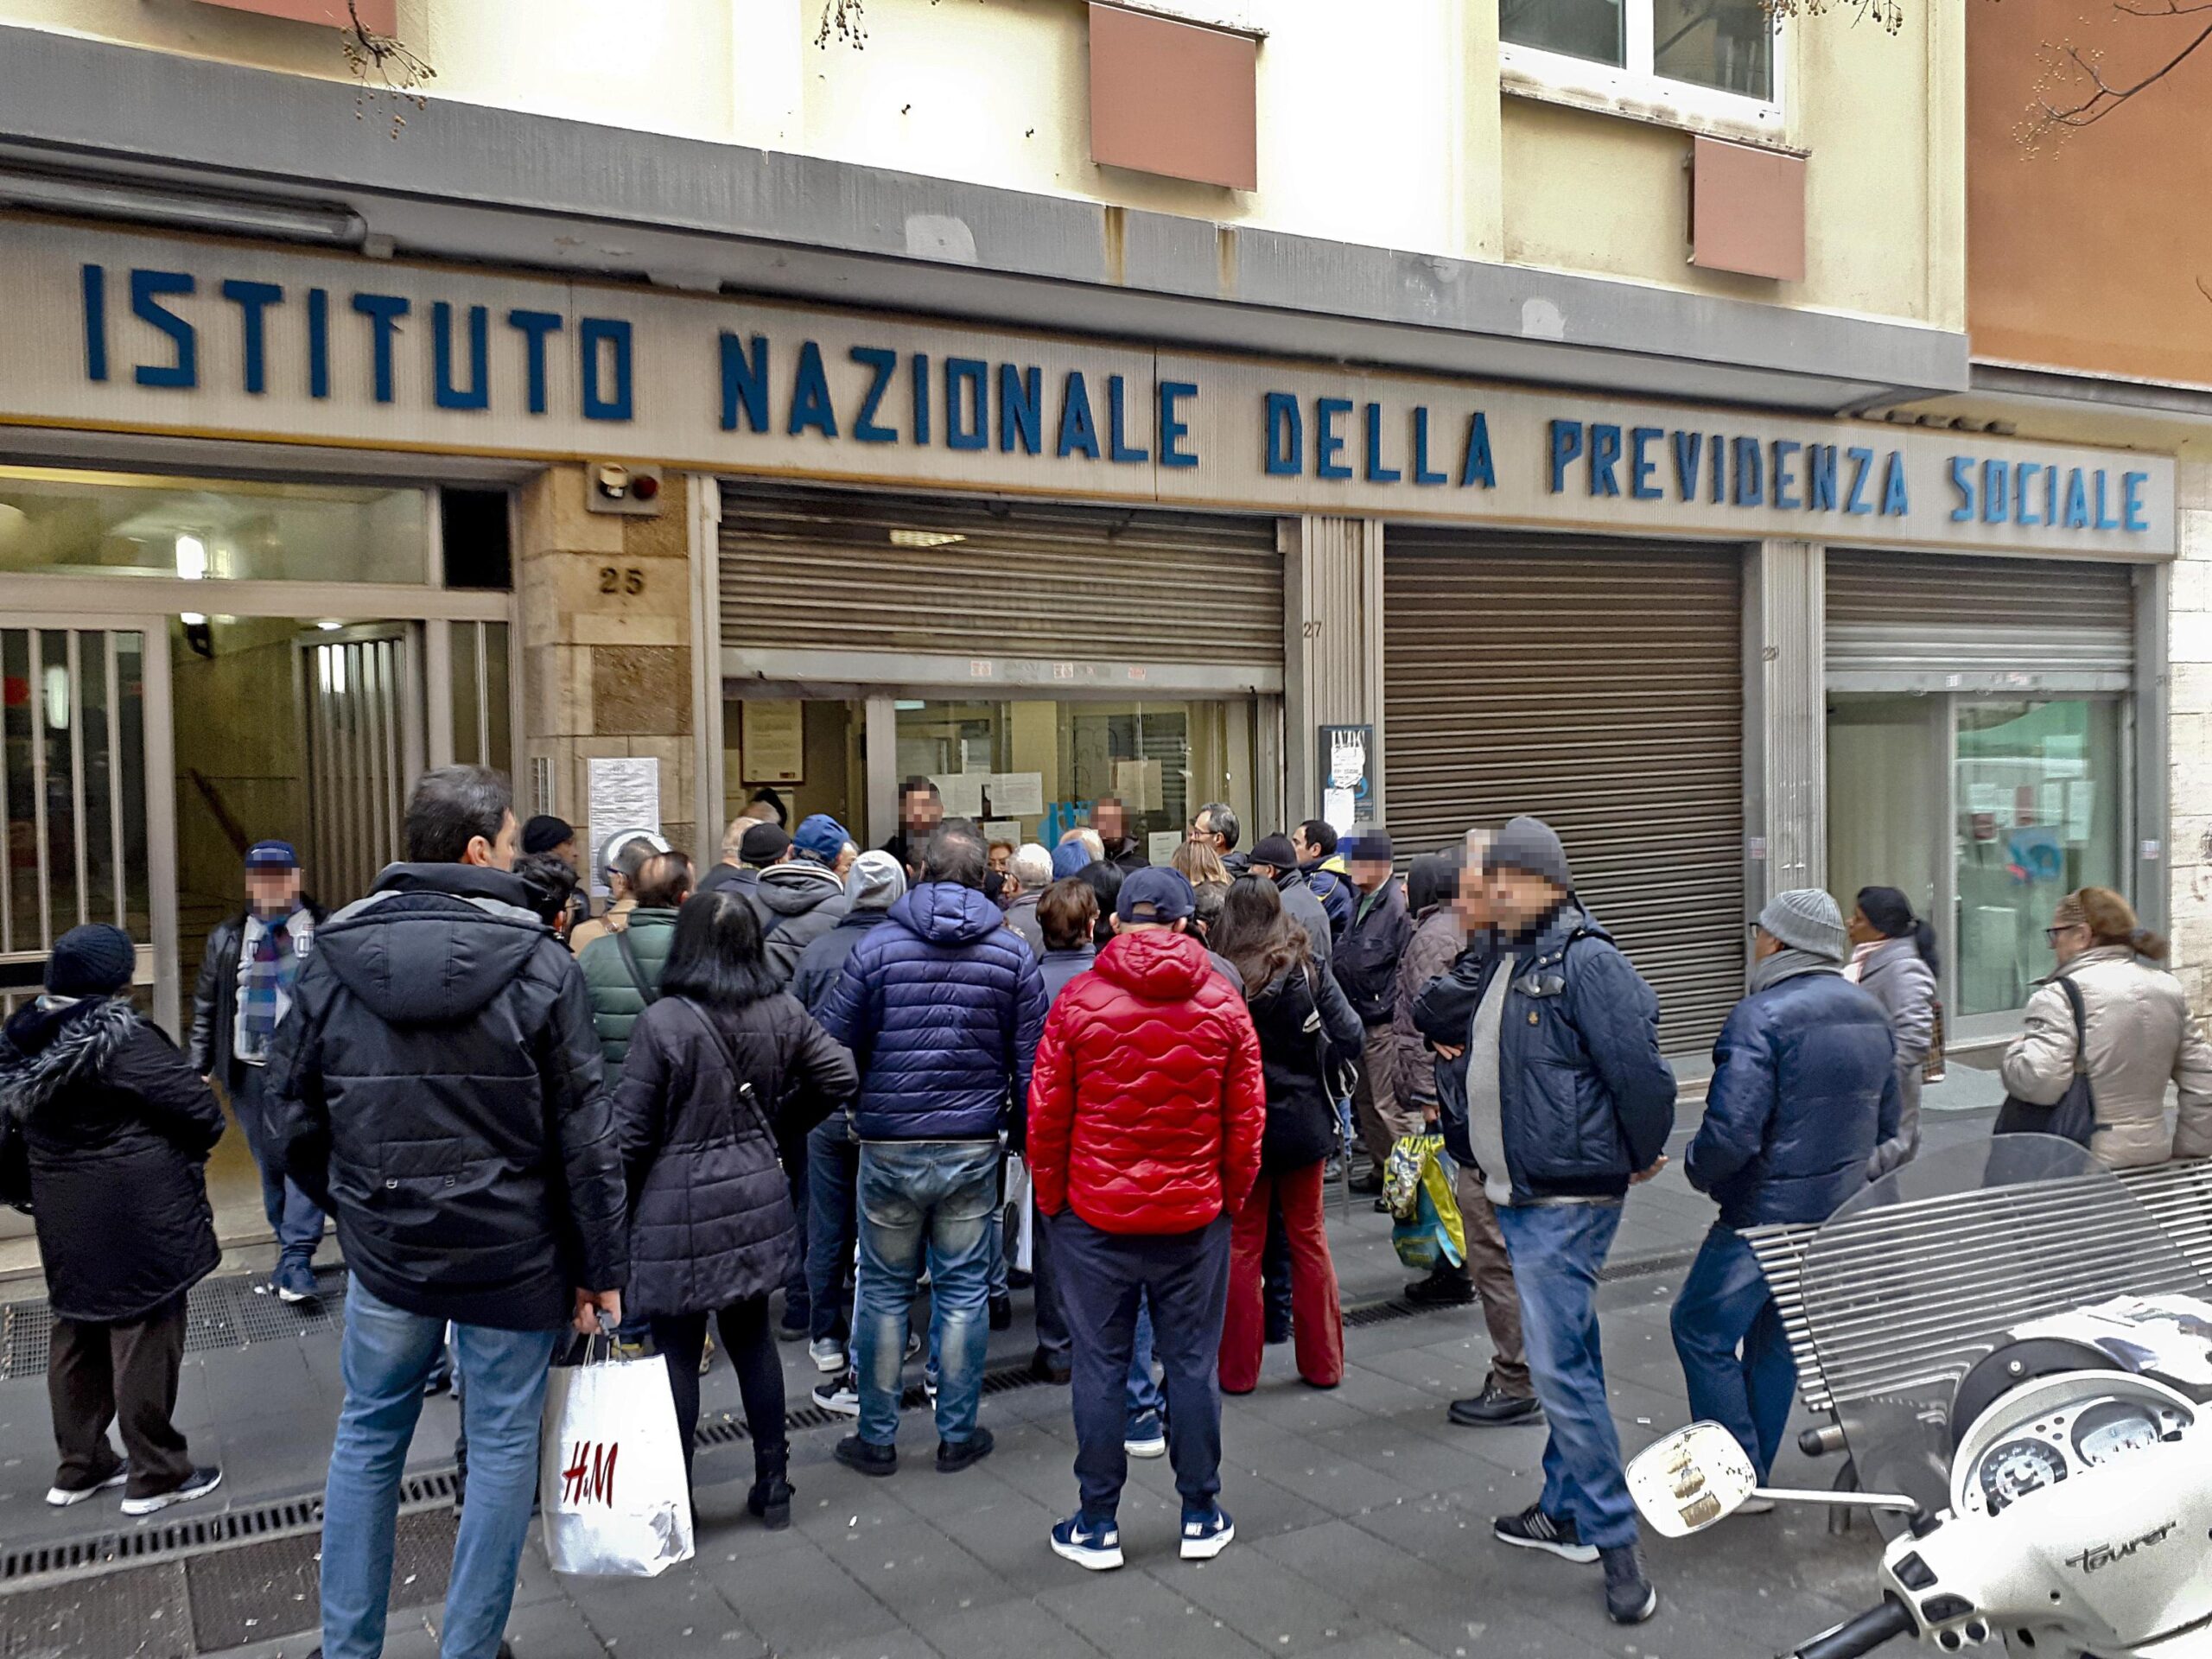 Fila all'estrno di uno degli sportelli INPS a Napoli tra le citta' con più richieste di domande di pensione anticipata con Quota 100, 8 febbraio 2019
ANSA / CIRO FUSCO